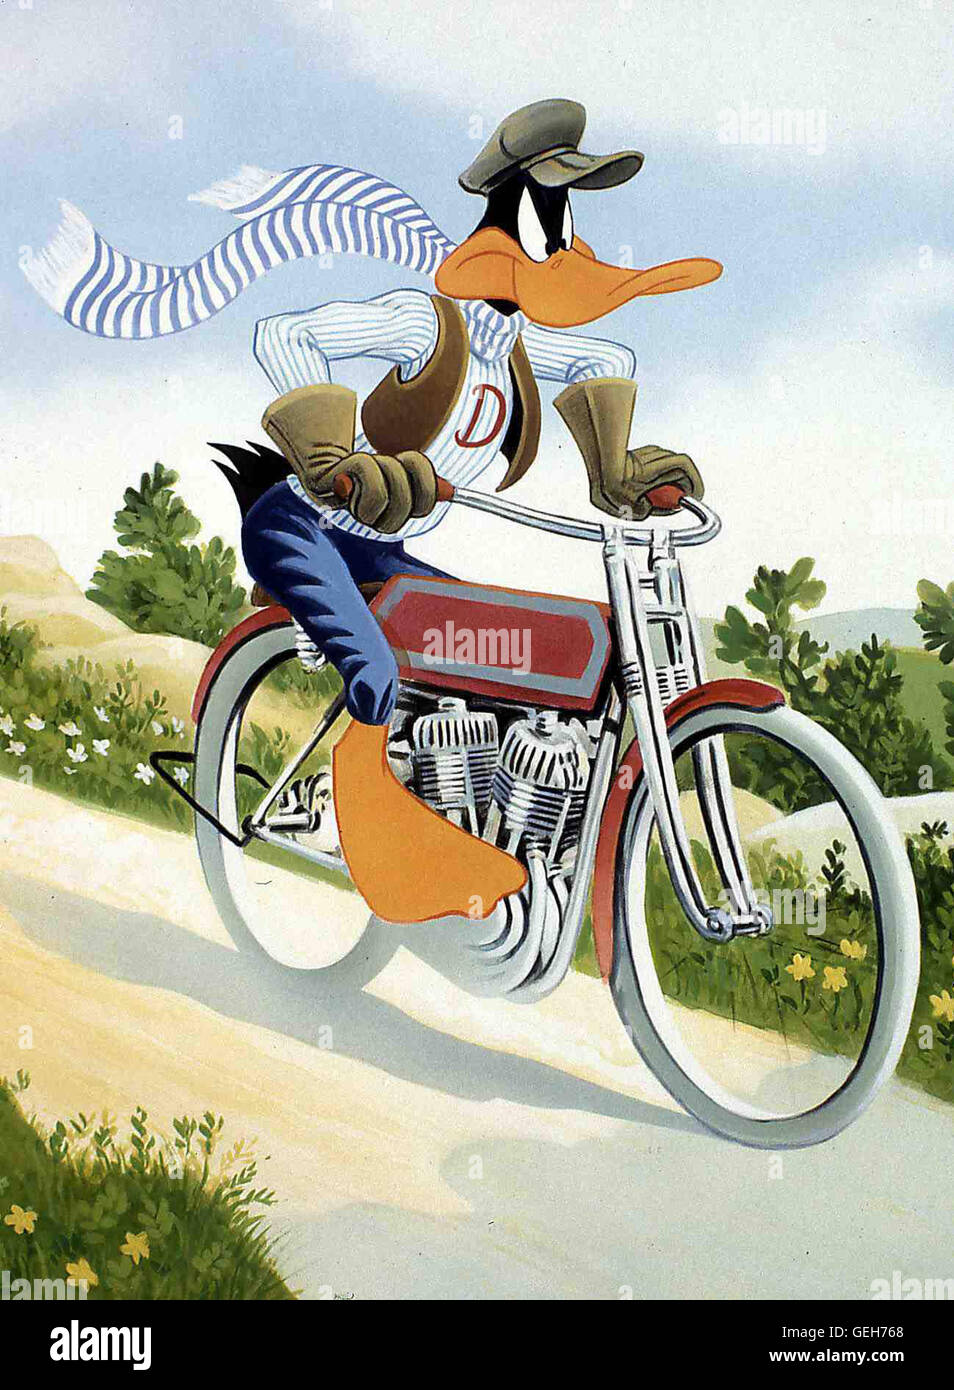 Allerdings sind auch ungebetene Gaeste unterwegs zur Insel: Ein Pirat und sein Maat! Daffy Duck macht sich auf, die Insel und ihr Geheimnis, hinter dem der Pirat her ist, zu verteidigen. *** Local Caption *** 1983, Daffy Duck's Movie: Fantastic Island, Da Stock Photo